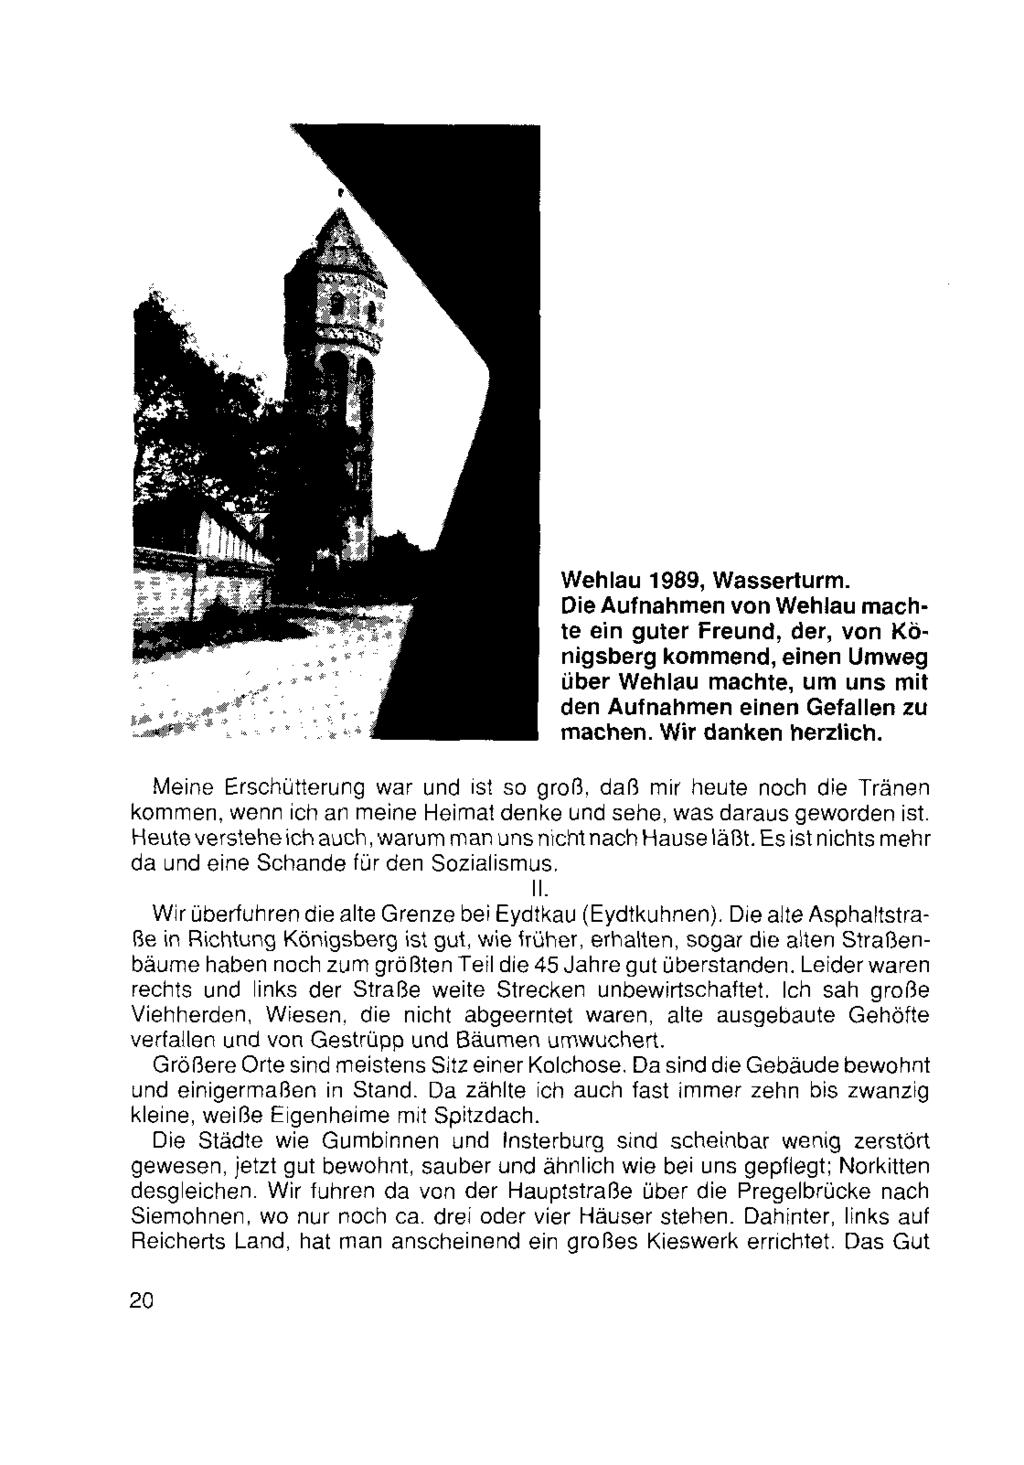 Wehlau 1989, Wasserturm. Die Aufnahmen von Wehlau machte ein guter Freund, der, von Königsberg kommend, einen Umweg über Wehlau machte, um uns mit den Aufnahmen einen Gefallen zu machen.